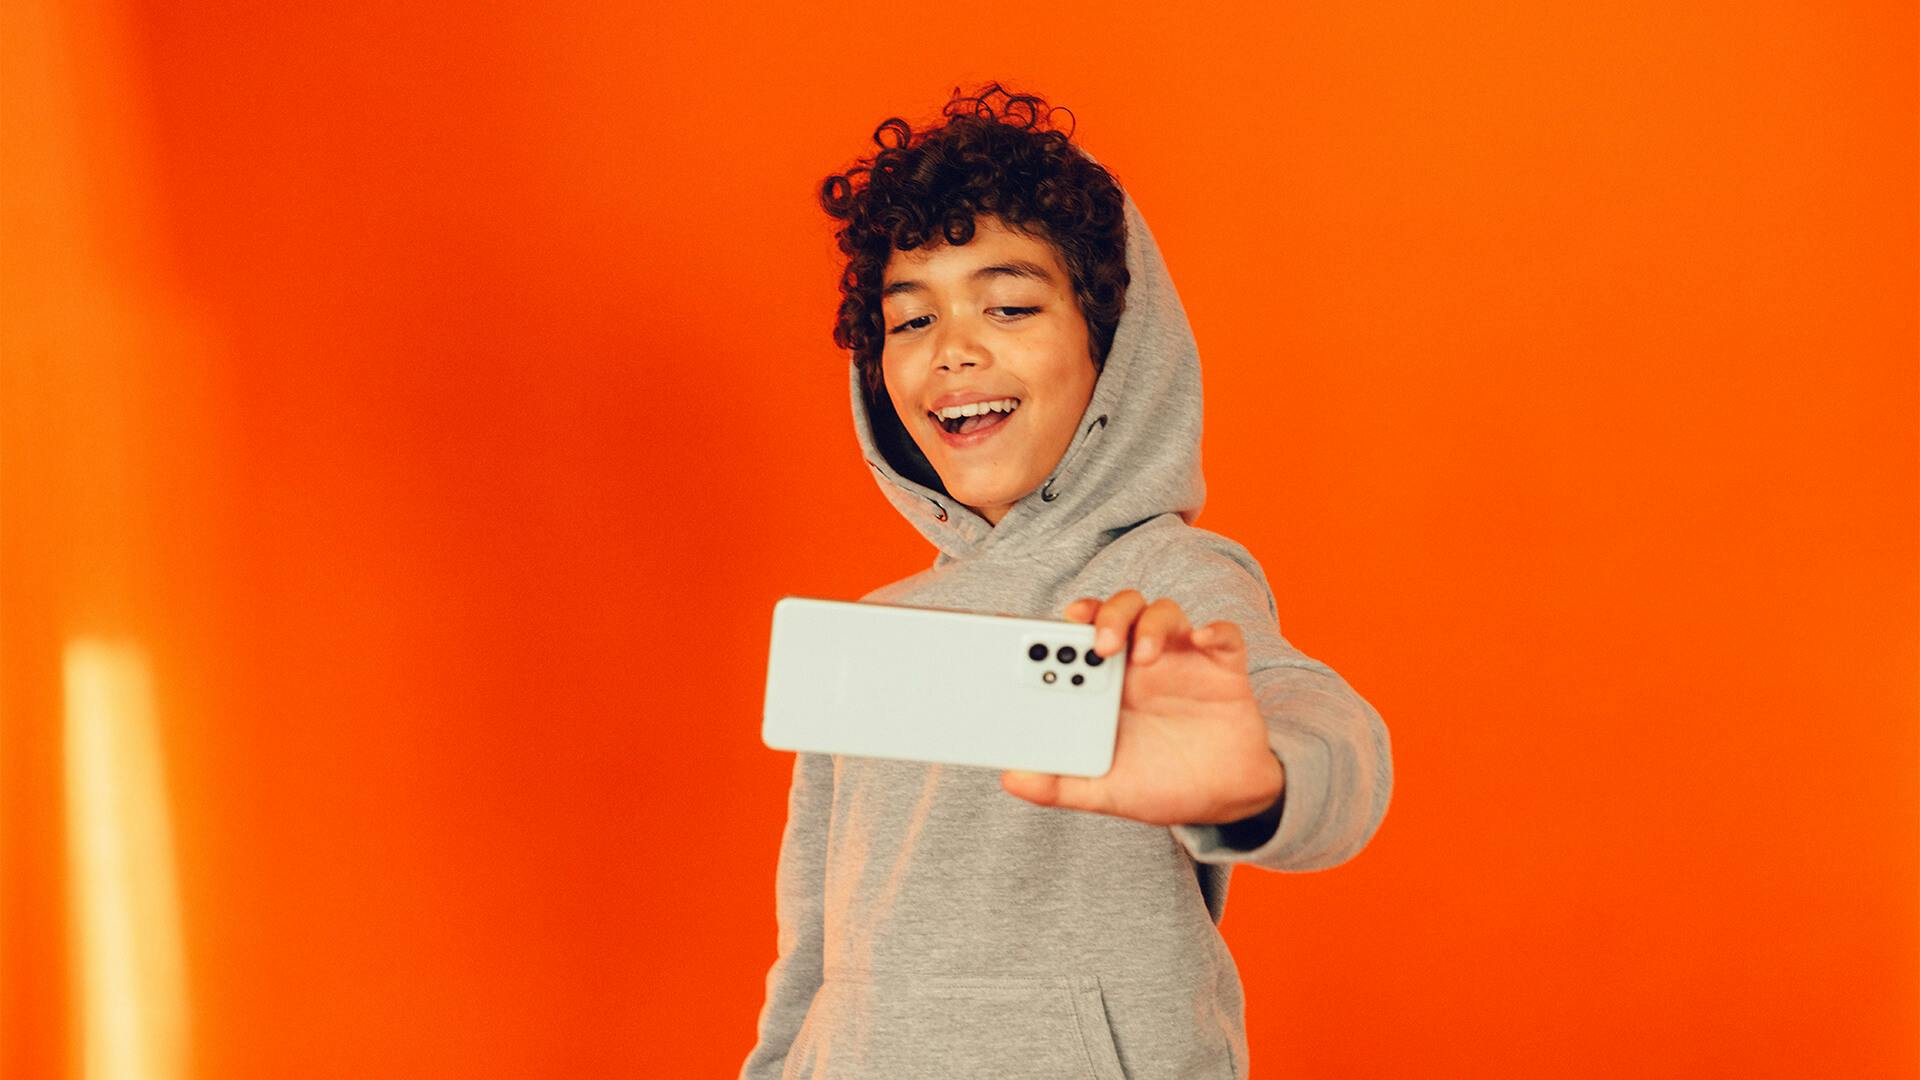 Barn ler mot mobilen som han håller framför sig. Bakgrunden är orange.